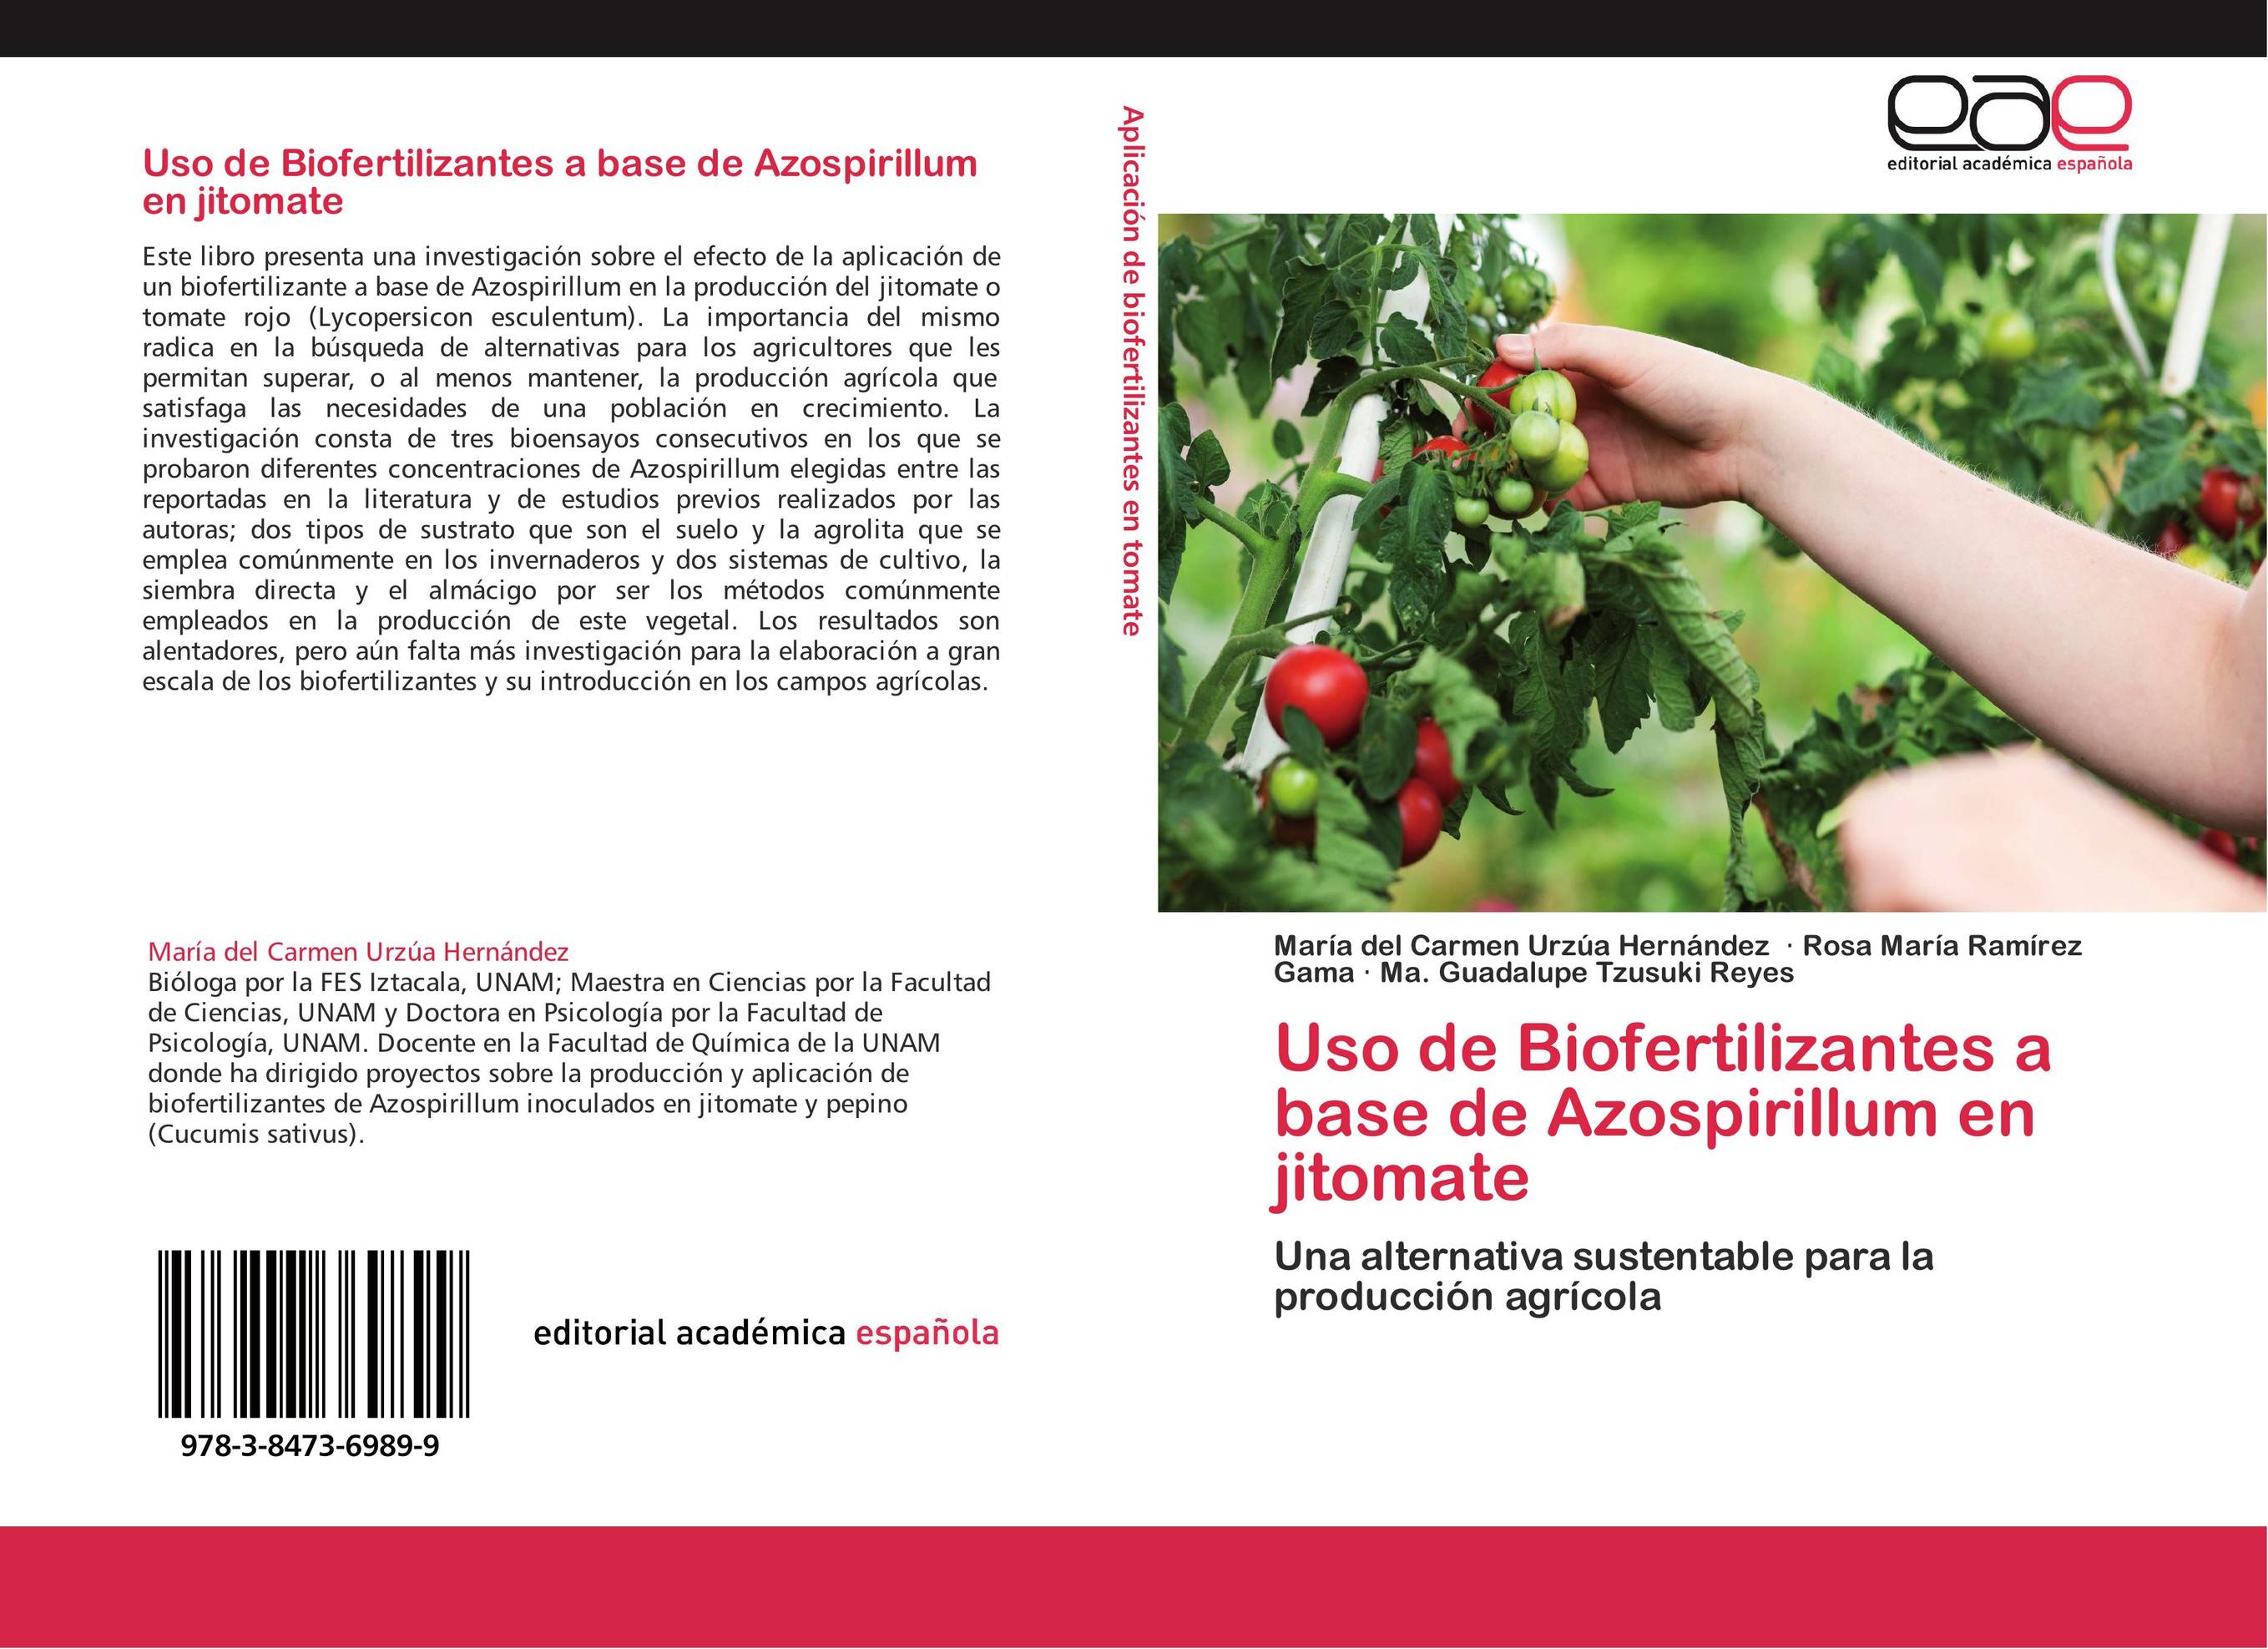 Uso de Biofertilizantes a base de Azospirillum en jitomate